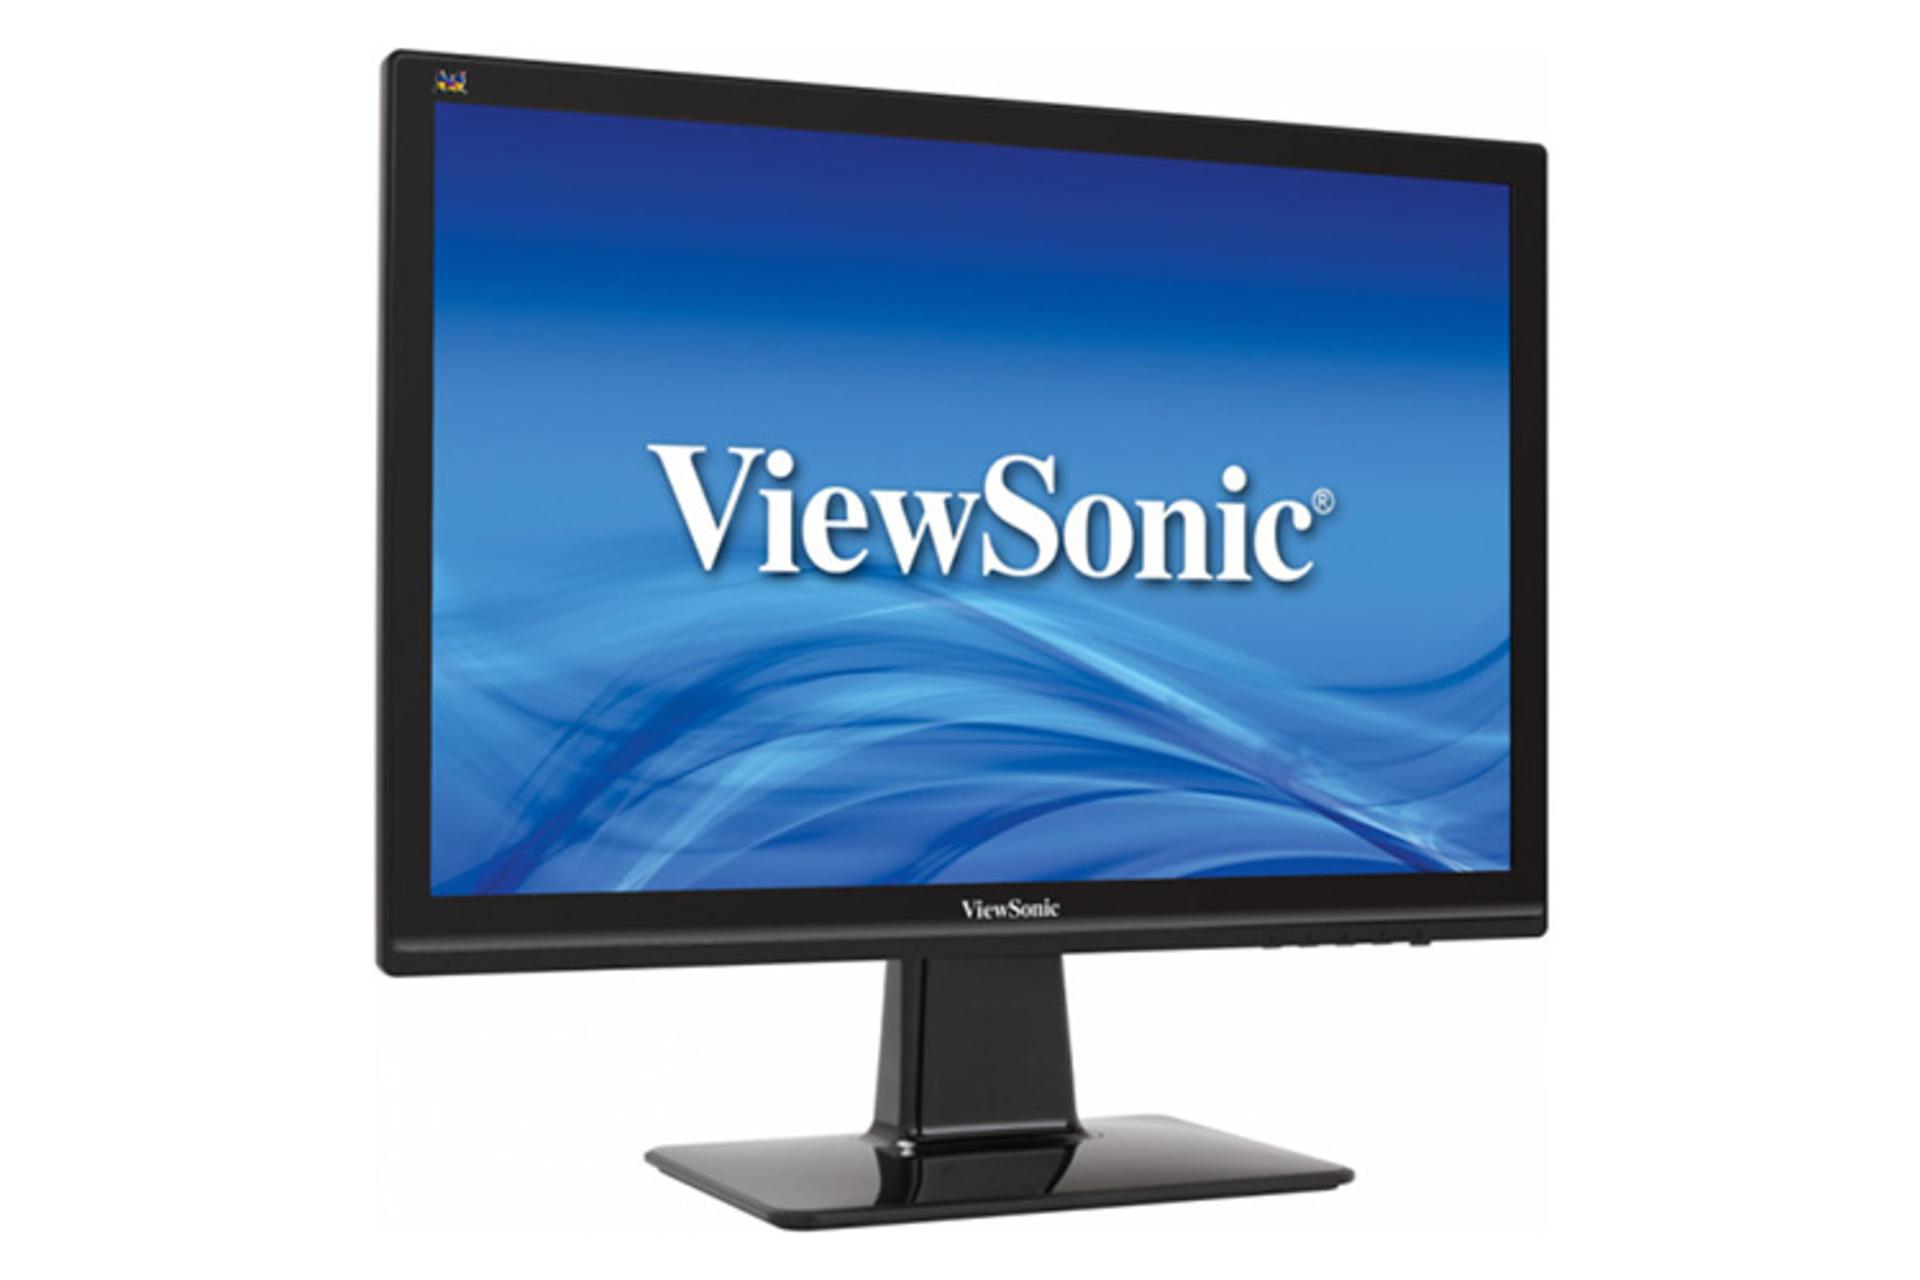 ViewSonic VX2039-SA / ویوسونیک